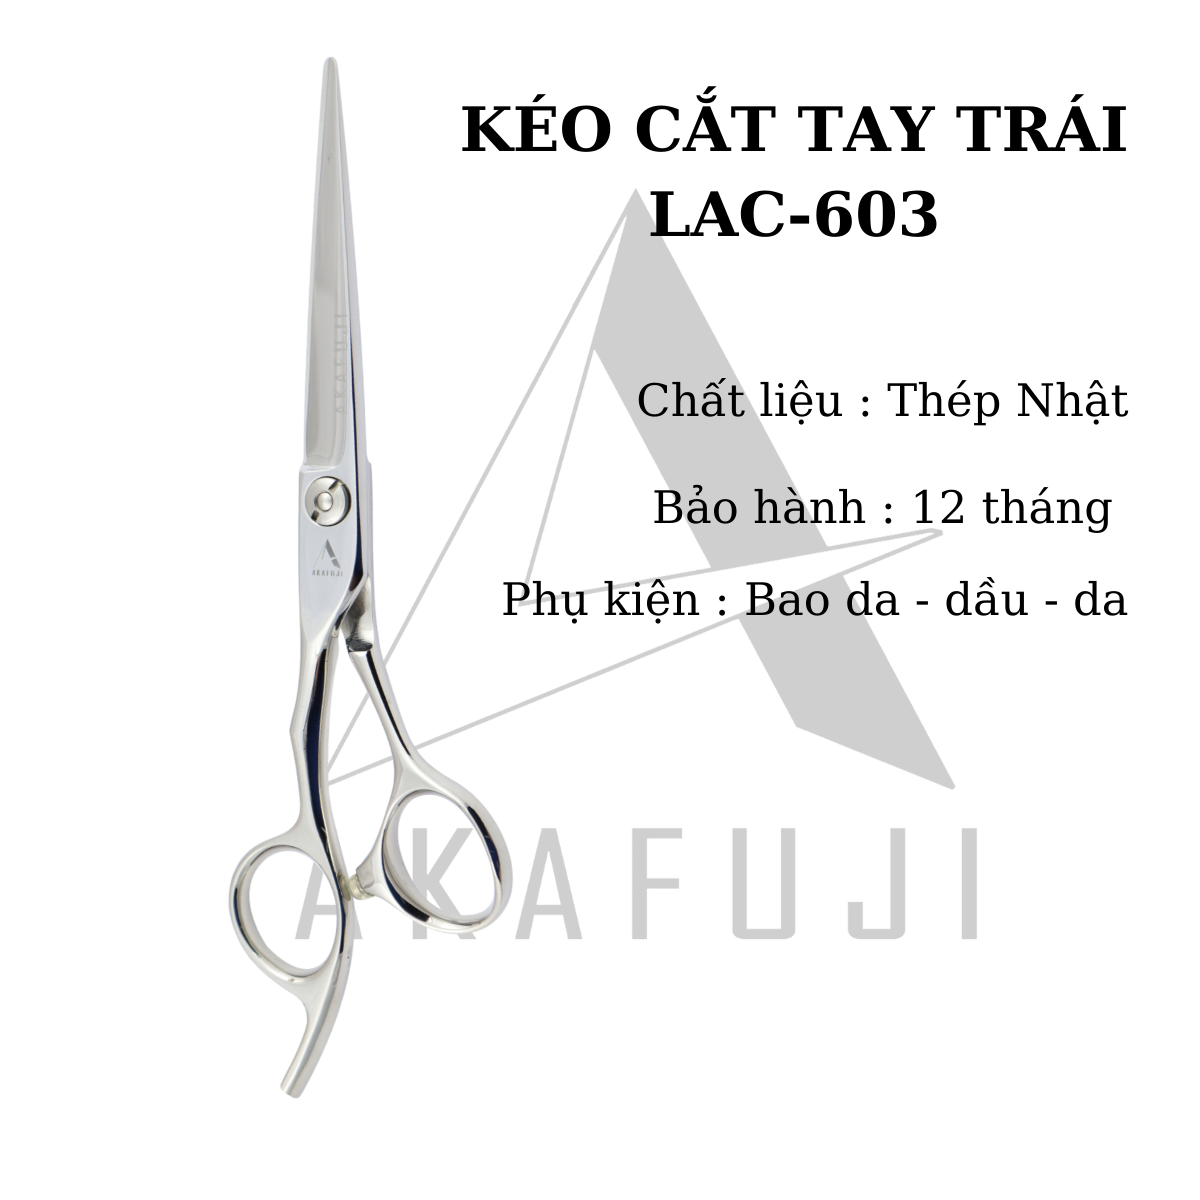 Kéo cắt tóc tay trái  LAC-603 (size 6.0 inches)